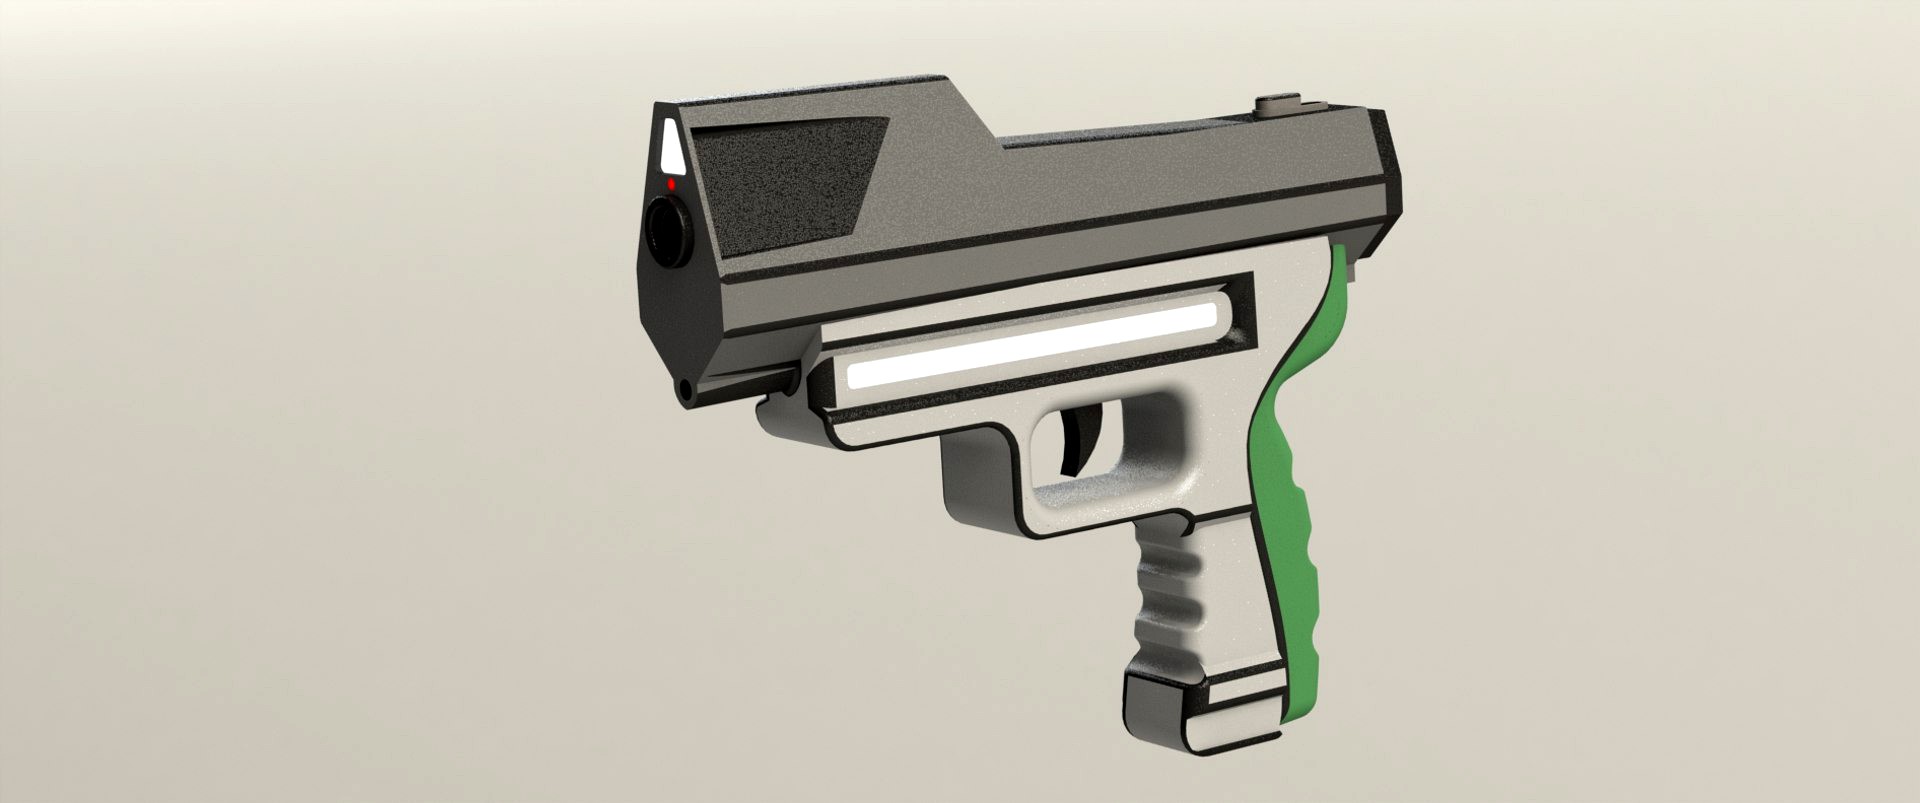 Conceptual gun 5